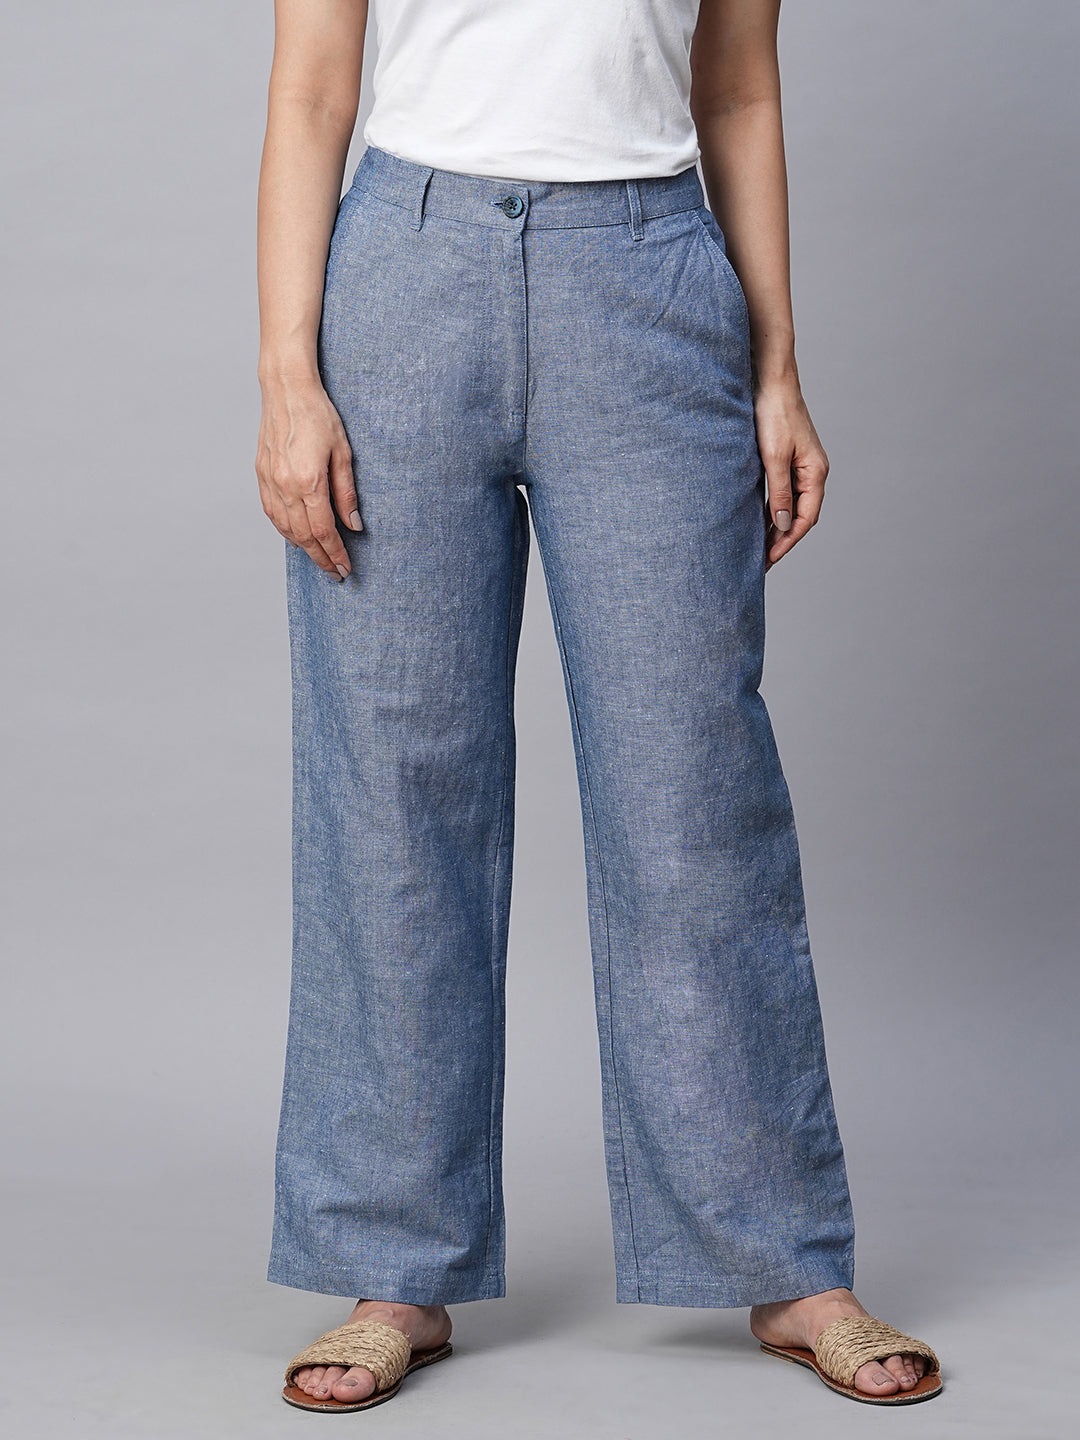 Women's Cotton Linen Blue Straight Fit Pant